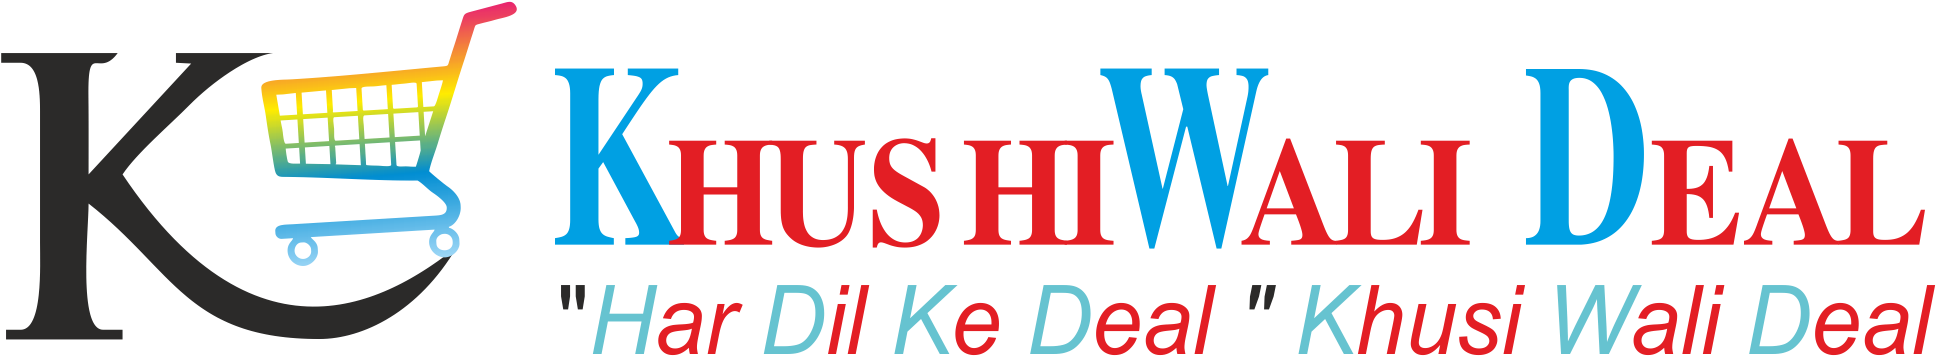 Cropped Cropped Logo Khushi Wali Deal 1 1 - University Of Kansas (2033x536), Png Download